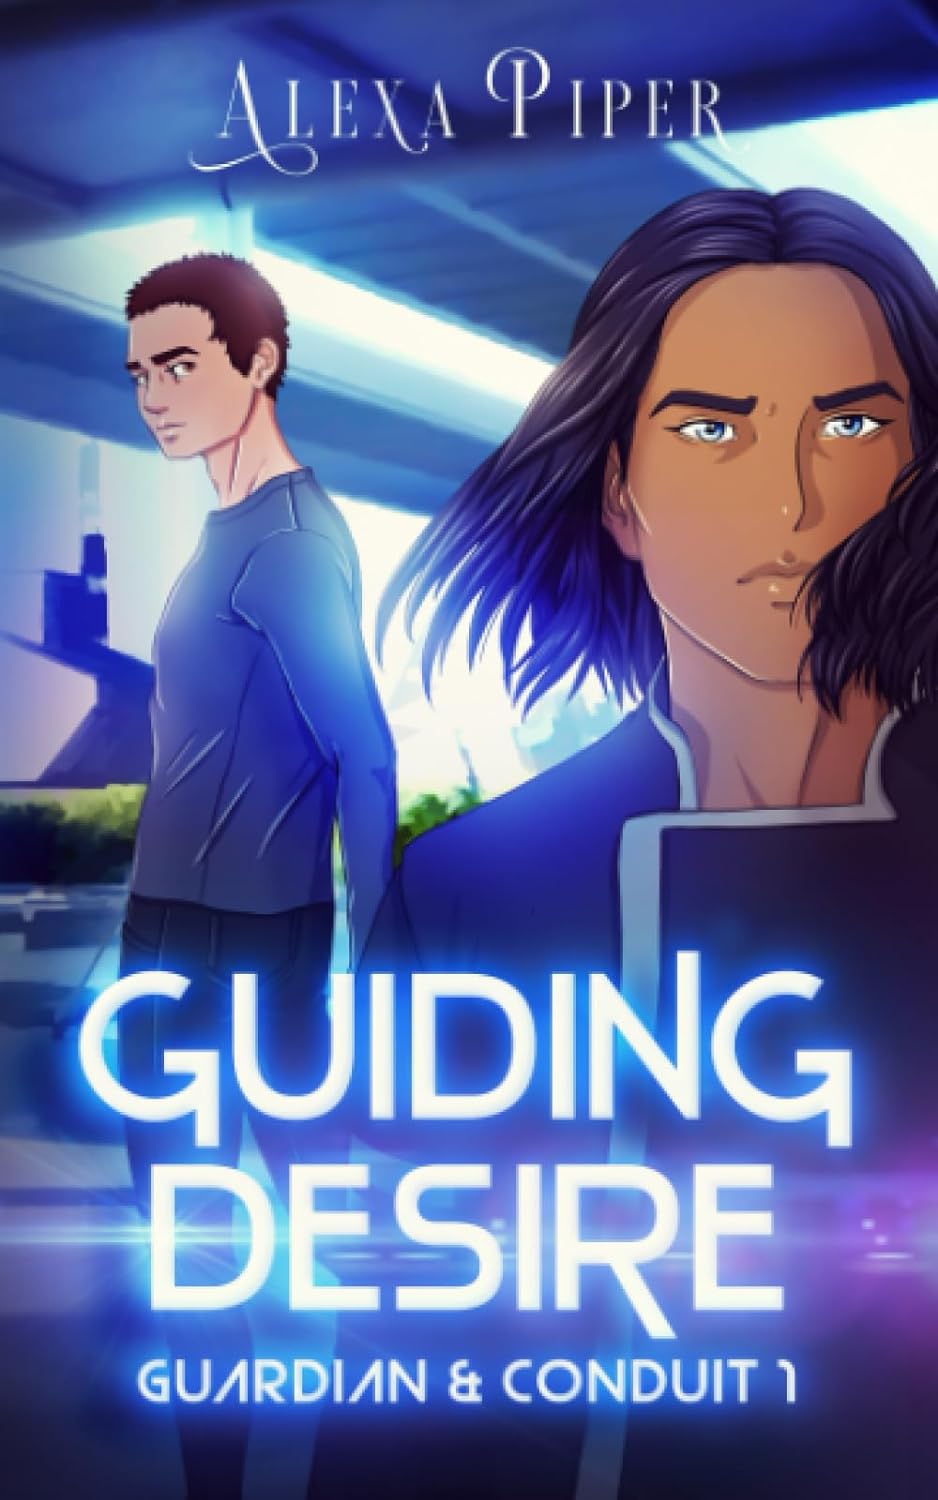 Guiding Desire (Guardian & Cond - Alexa Piper